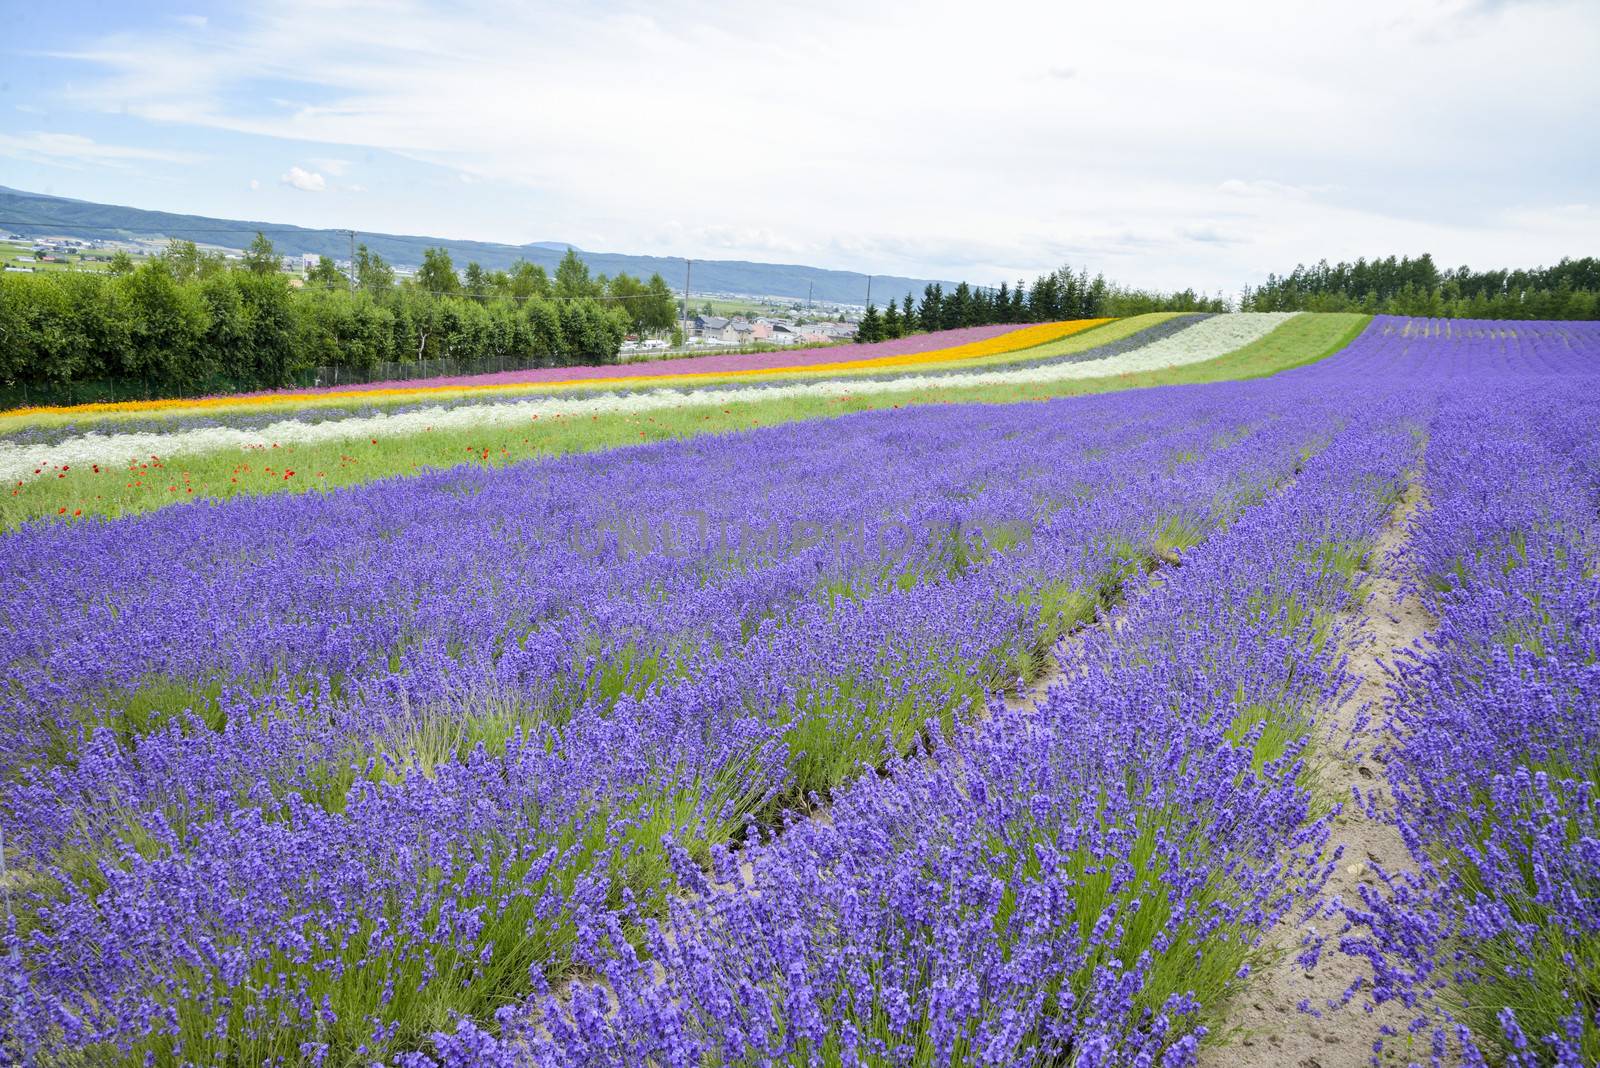 Lavender farm in Japan1 by gjeerawut